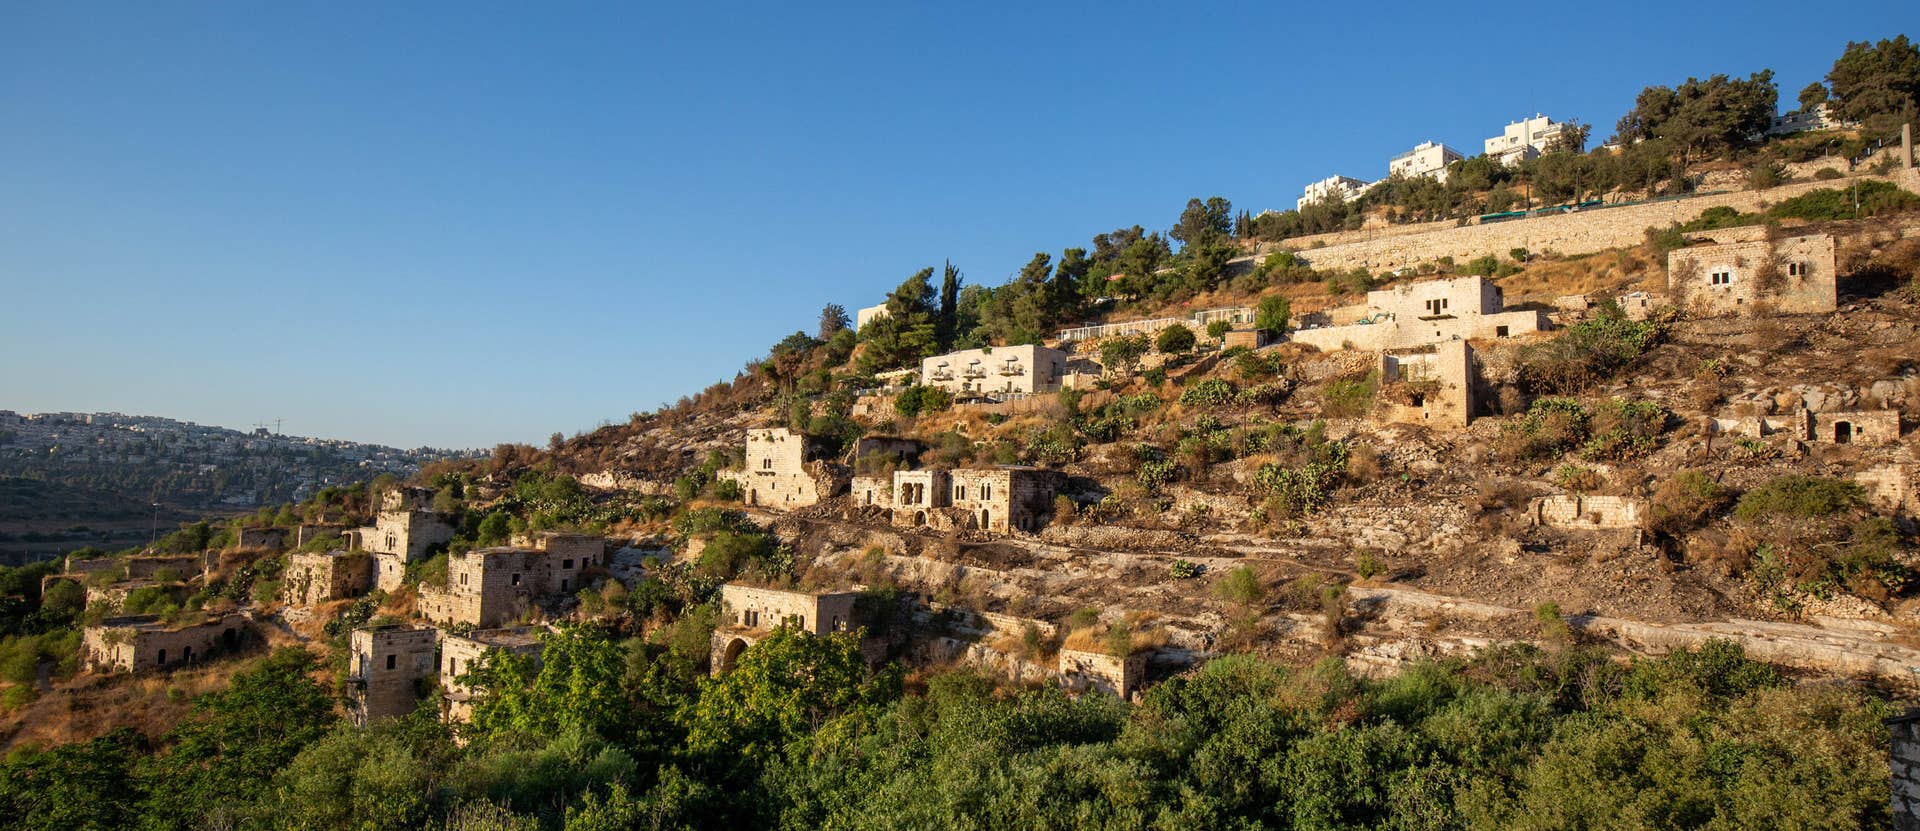 Israel plans to build villas